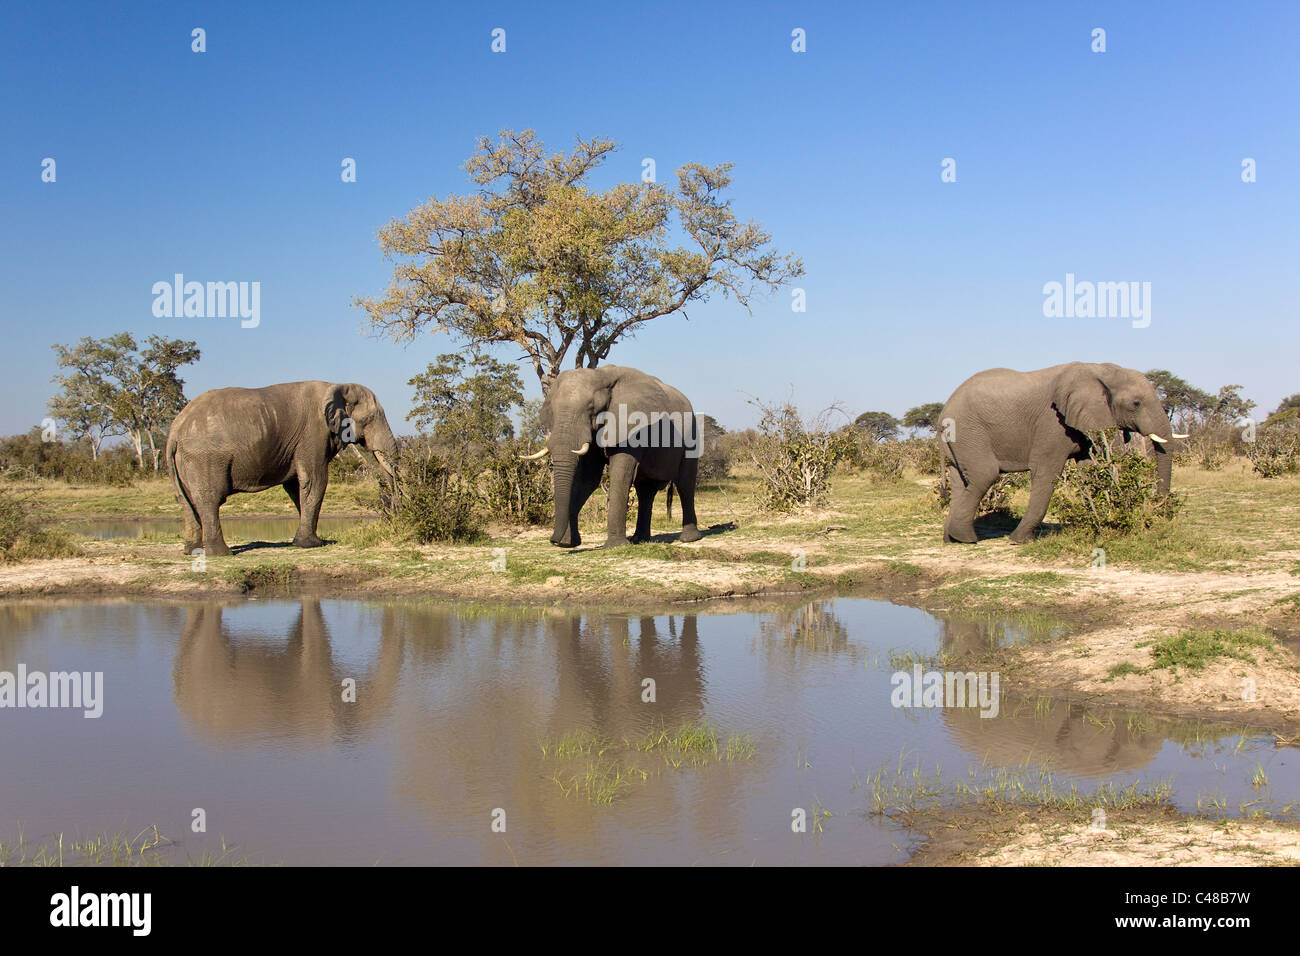 Afrikanische Elefanten (Loxodonta africana) am natürlichen Wasserloch, Savuti, Botswana, Afrika Foto Stock